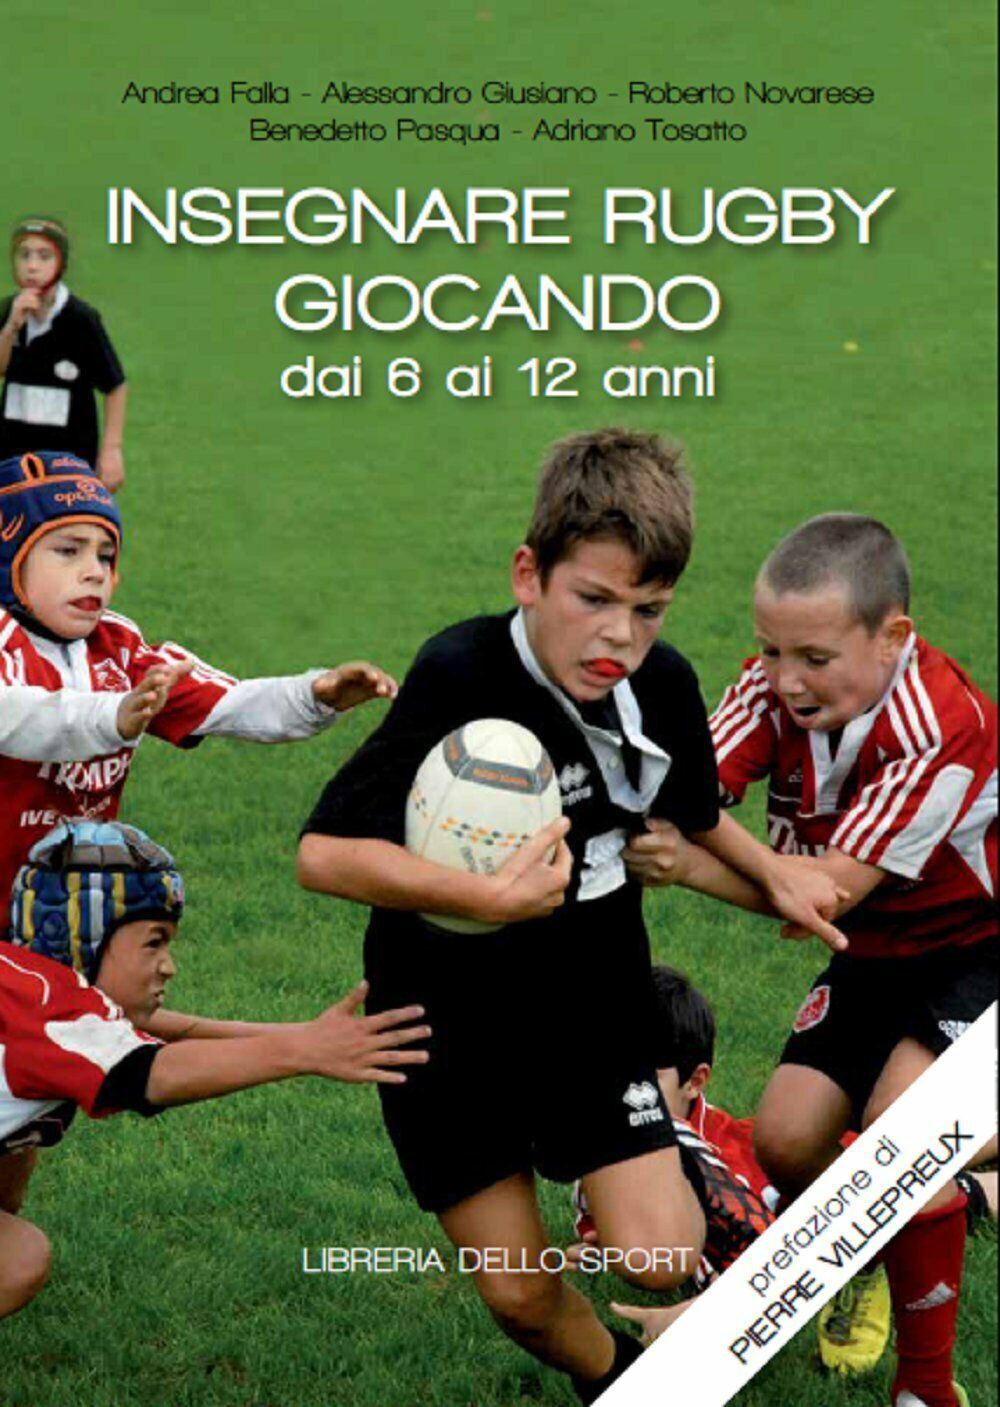 Insegnare rugby giocando dai 6 ai 12 anni - Libreria dello sport, 2017